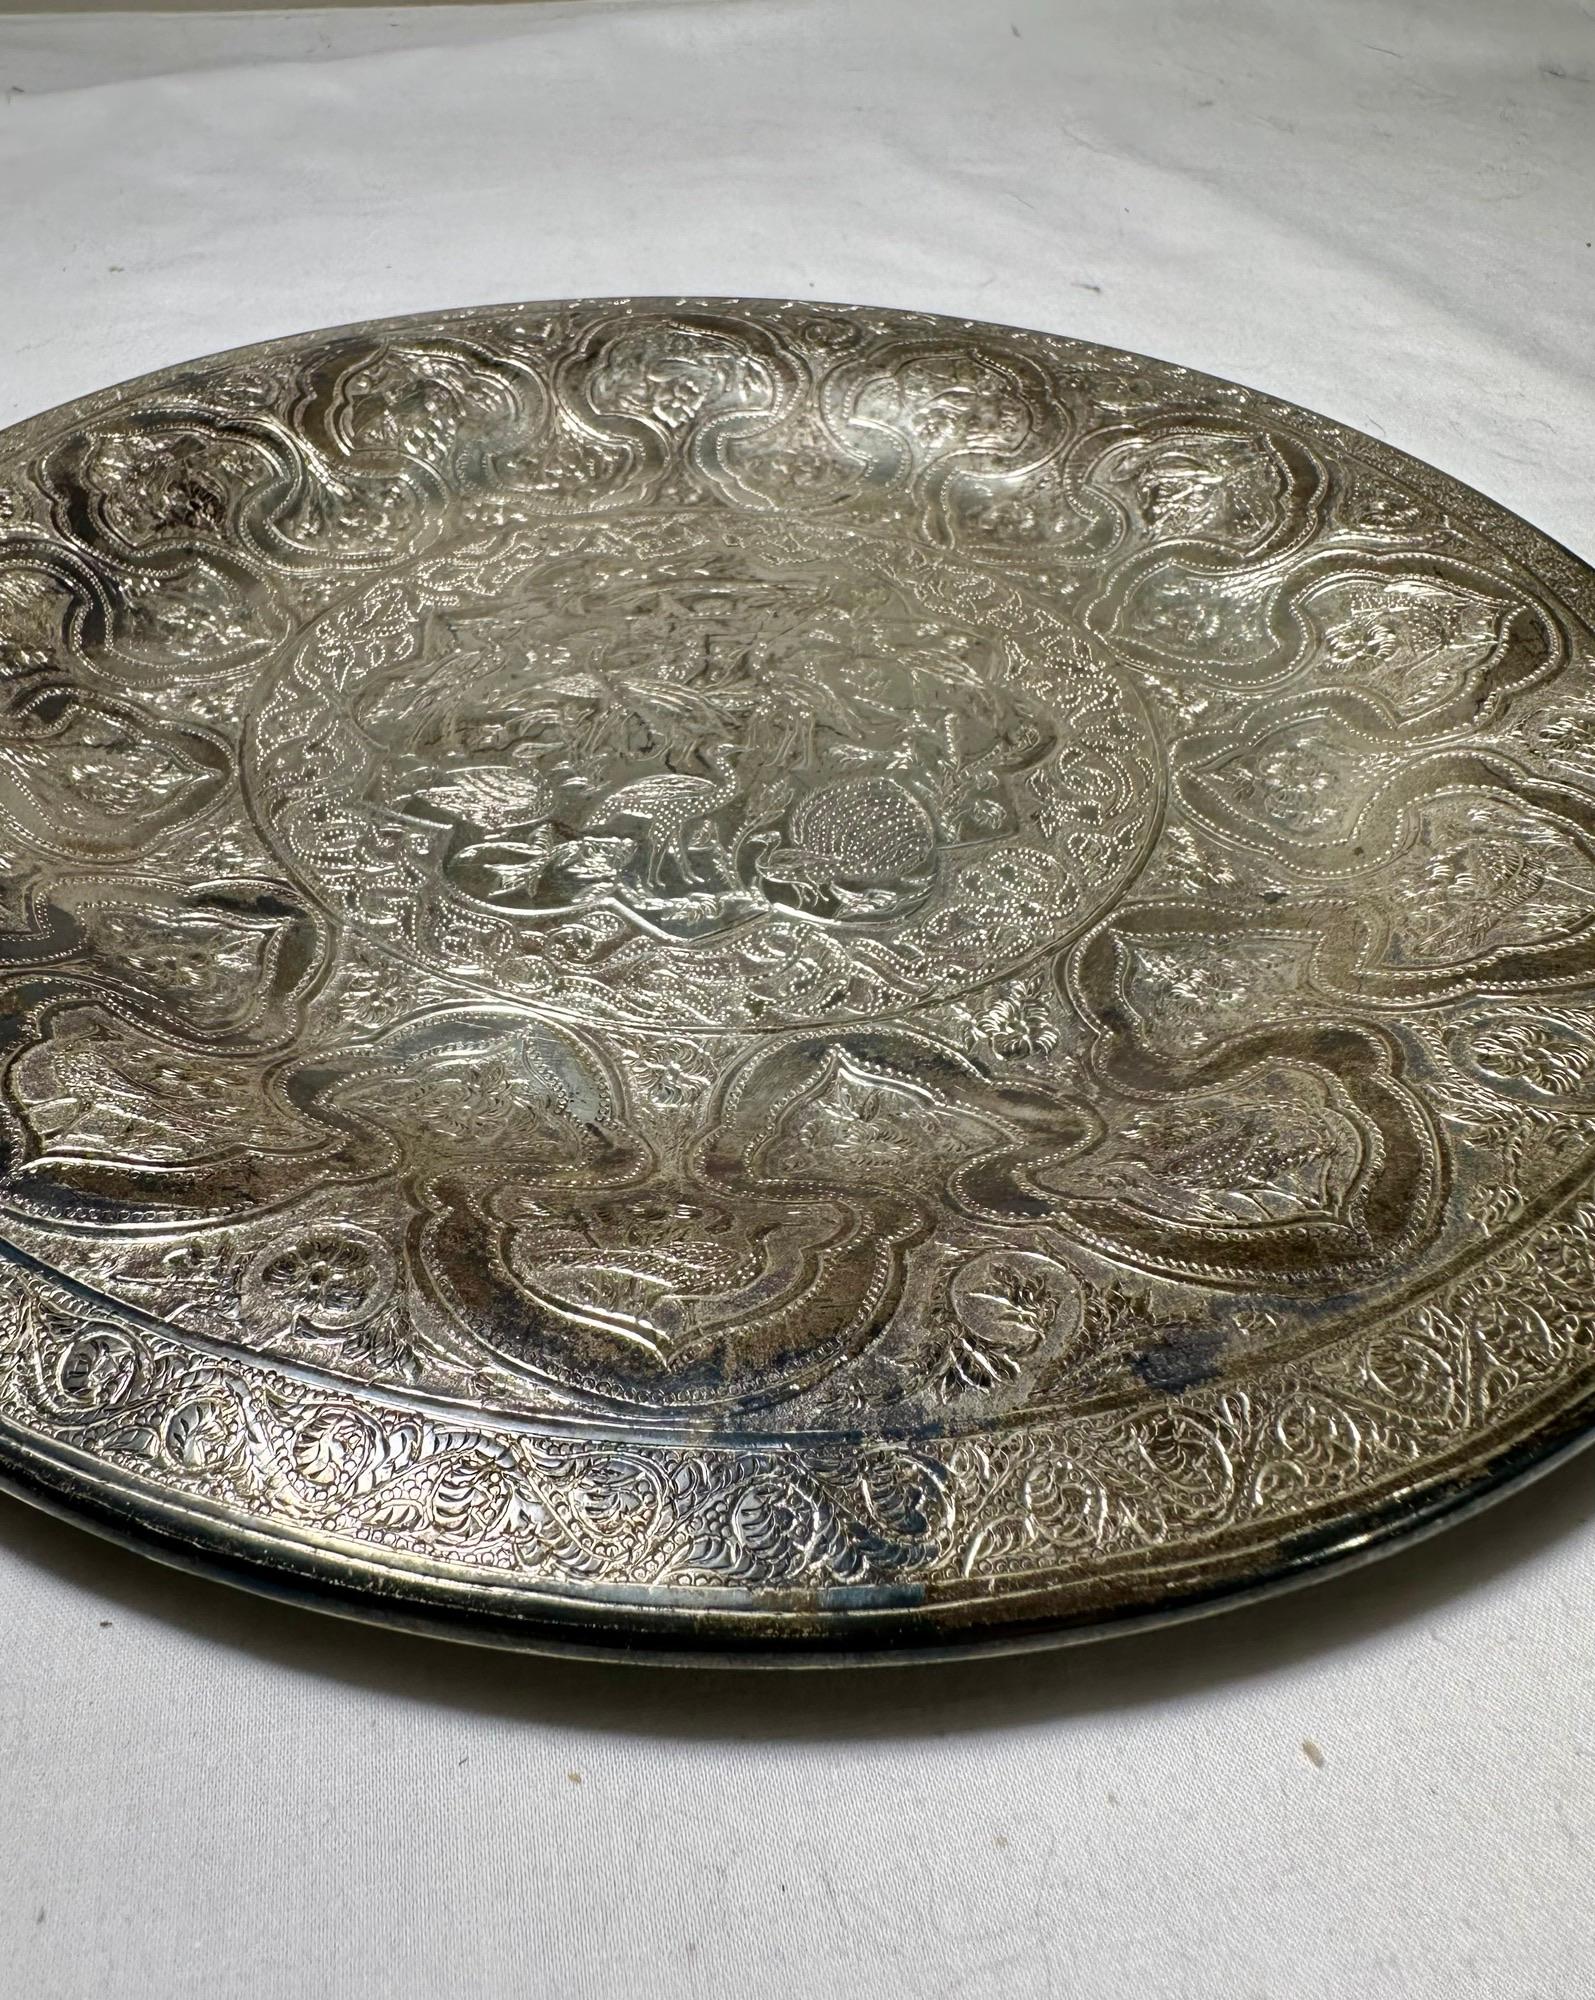 Vintage Persian Zandi Middle Eastern Islamic Round Silver-Plated Brass Platter.
 
Ce plateau en laiton lourd, plaqué argent et fabriqué à la main, est gravé, gaufré et poinçonné de motifs mauresques centrés sur de nombreux oiseaux décoratifs